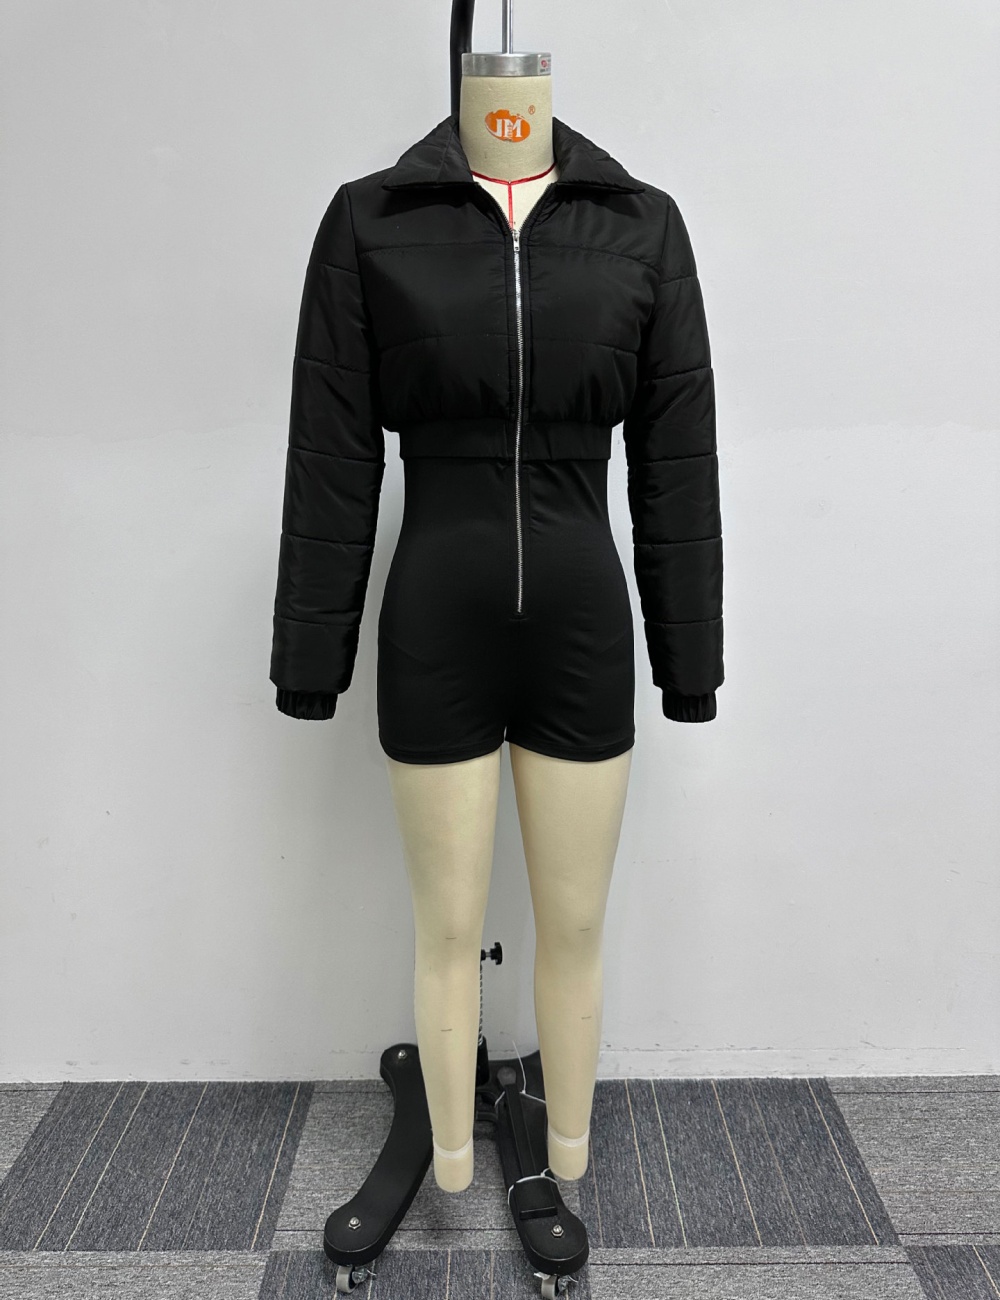 European style jumpsuit conjoined cotton coat